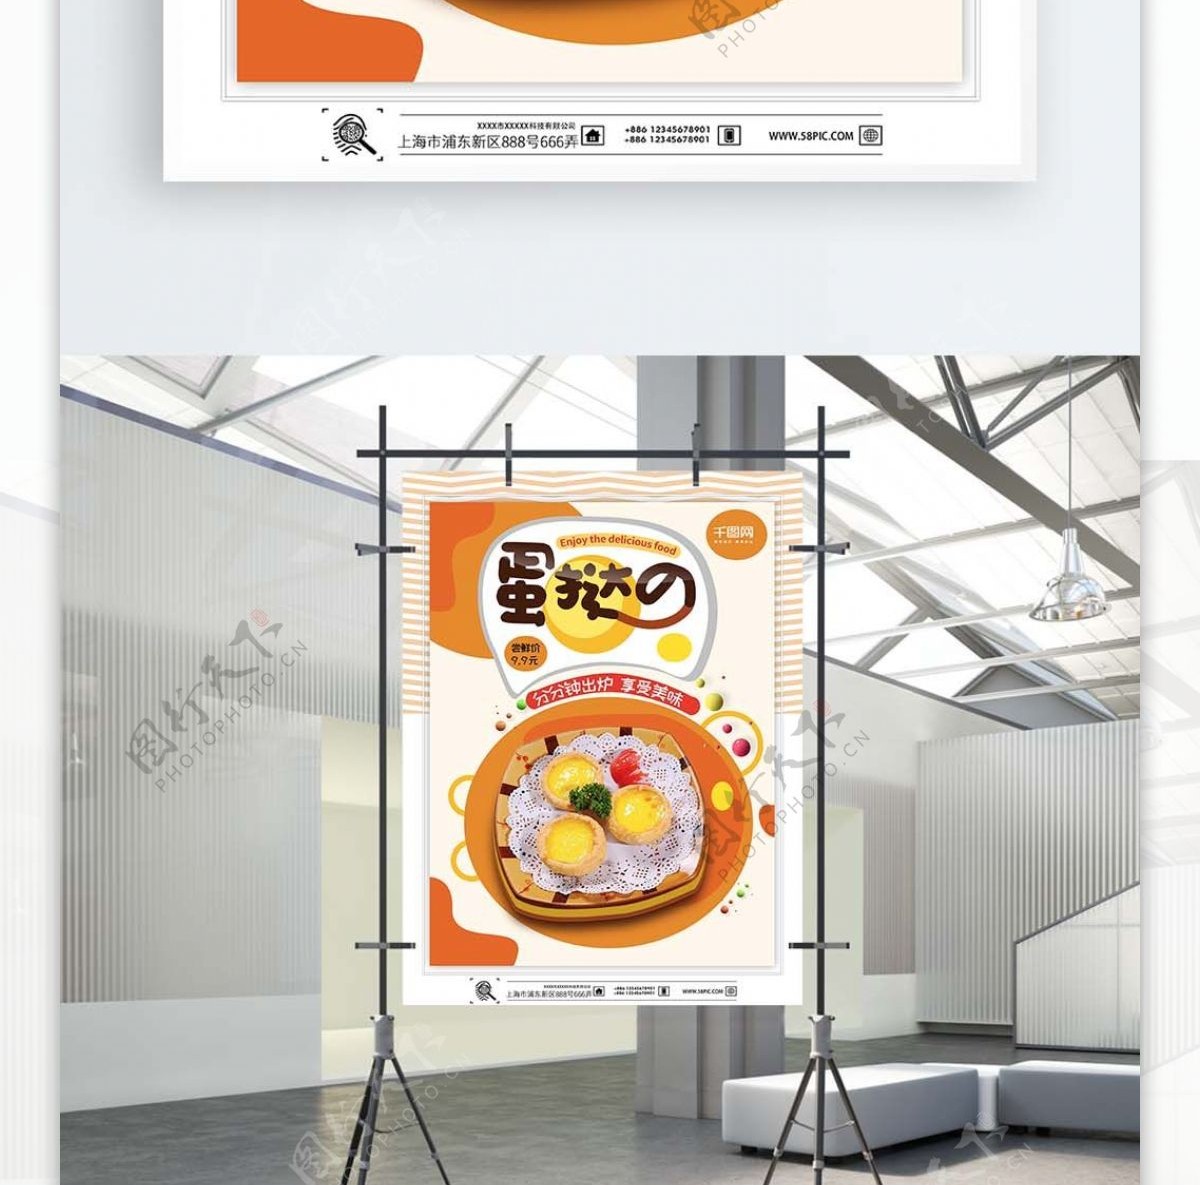 餐饮店橙色小清新蛋挞促销创意海报